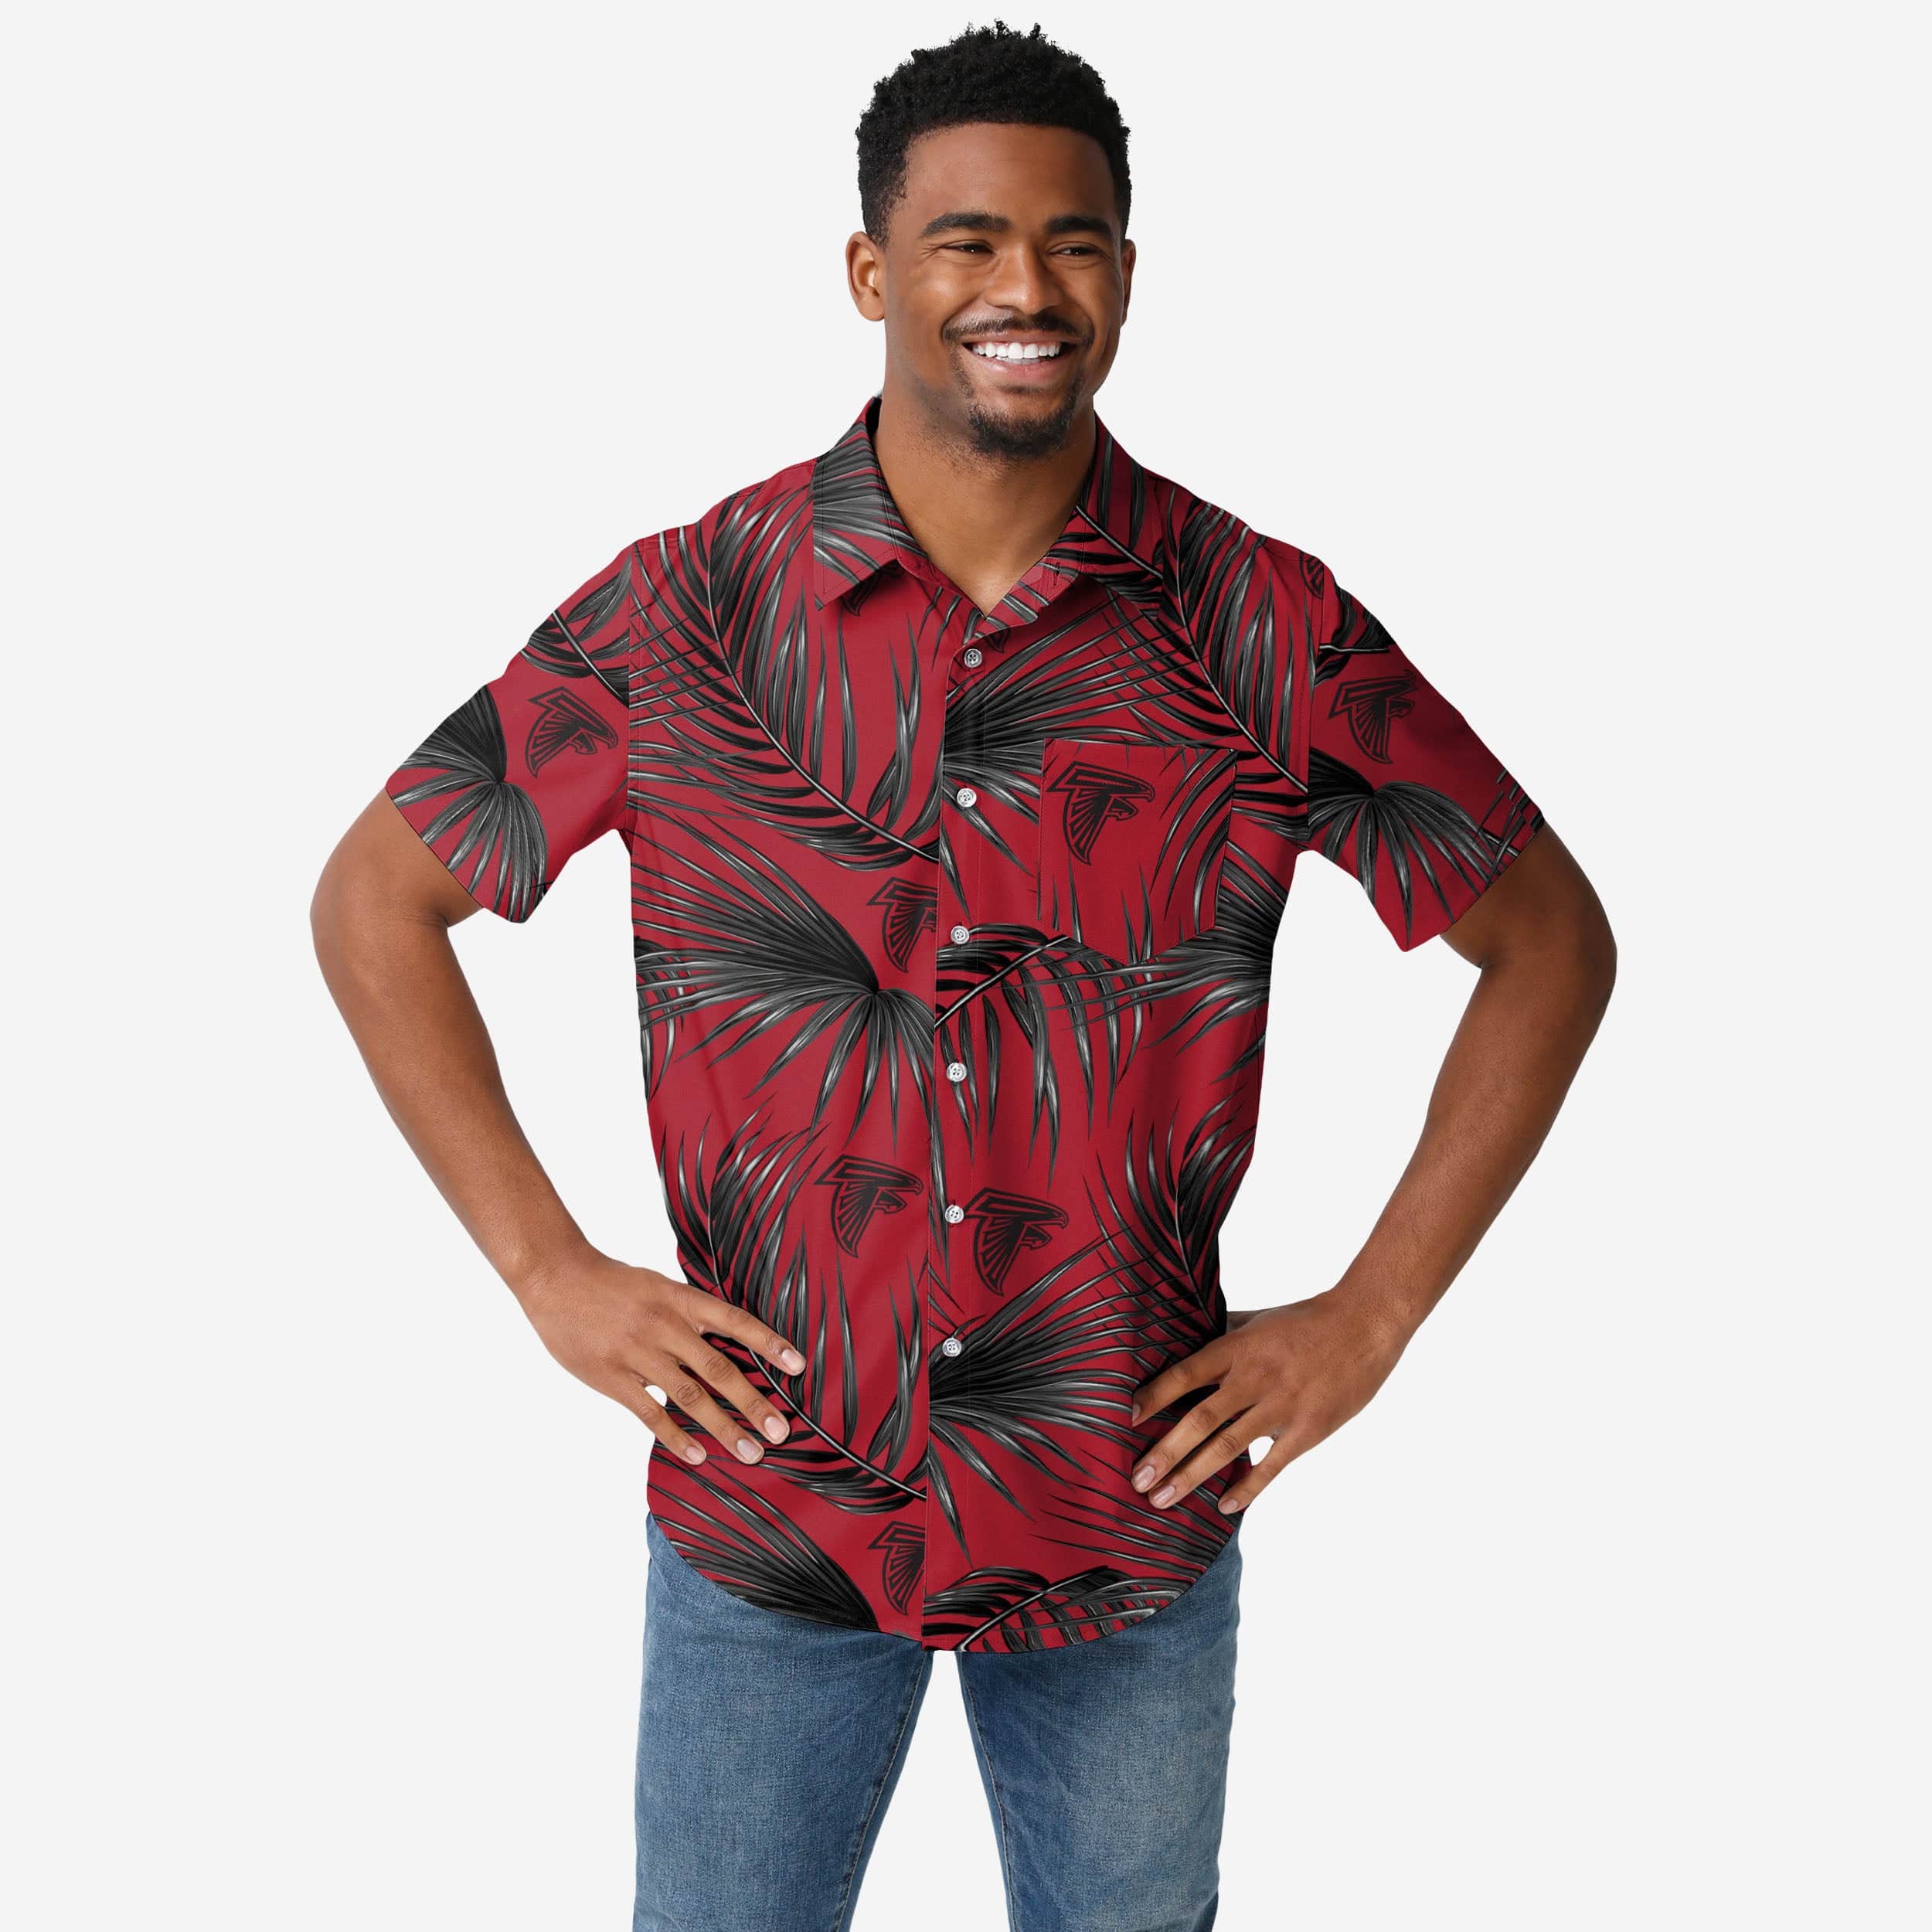 FOCO Atlanta Falcons Hawaiian Button Up Shirt - XL - Men